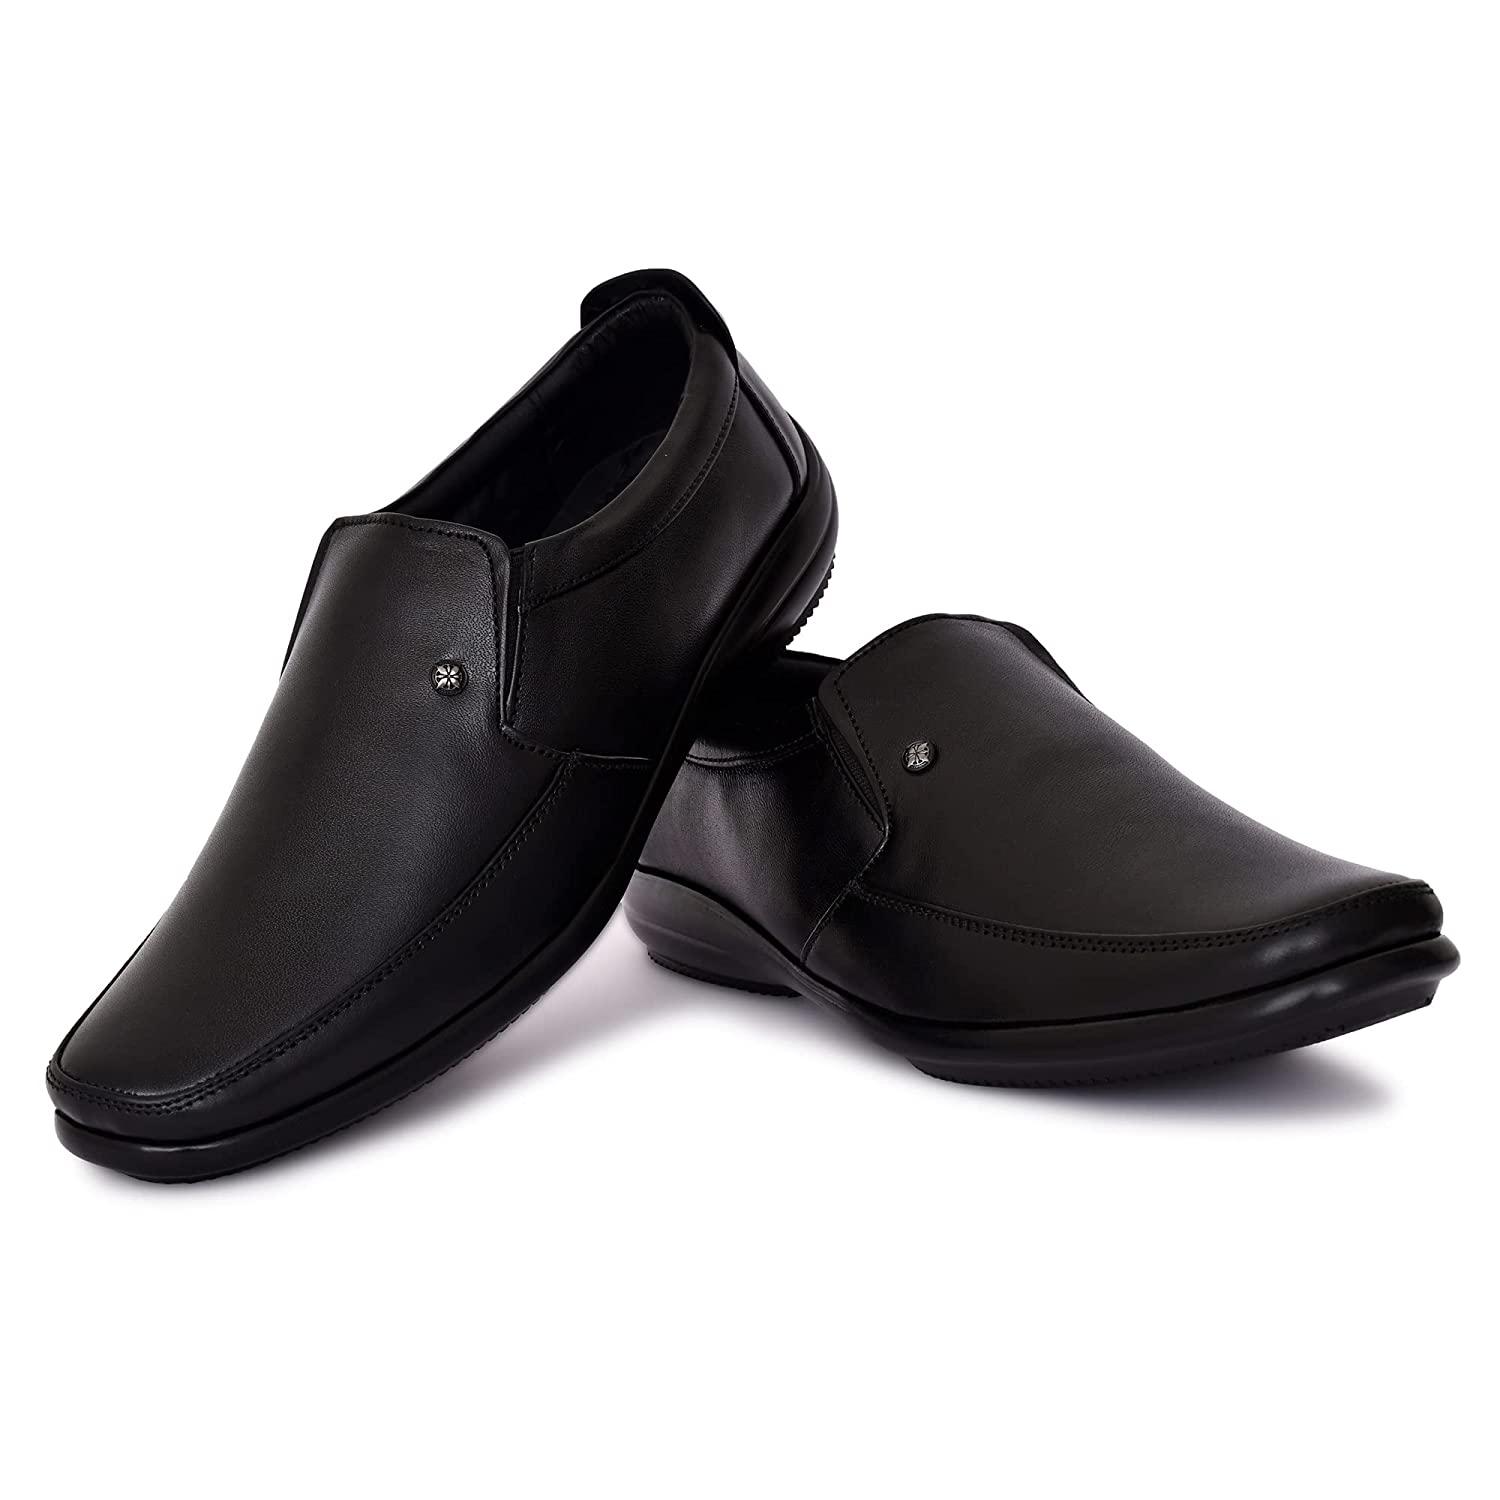 Ijzer Formal Leather Shoes for Men – Ijzer Enterprises